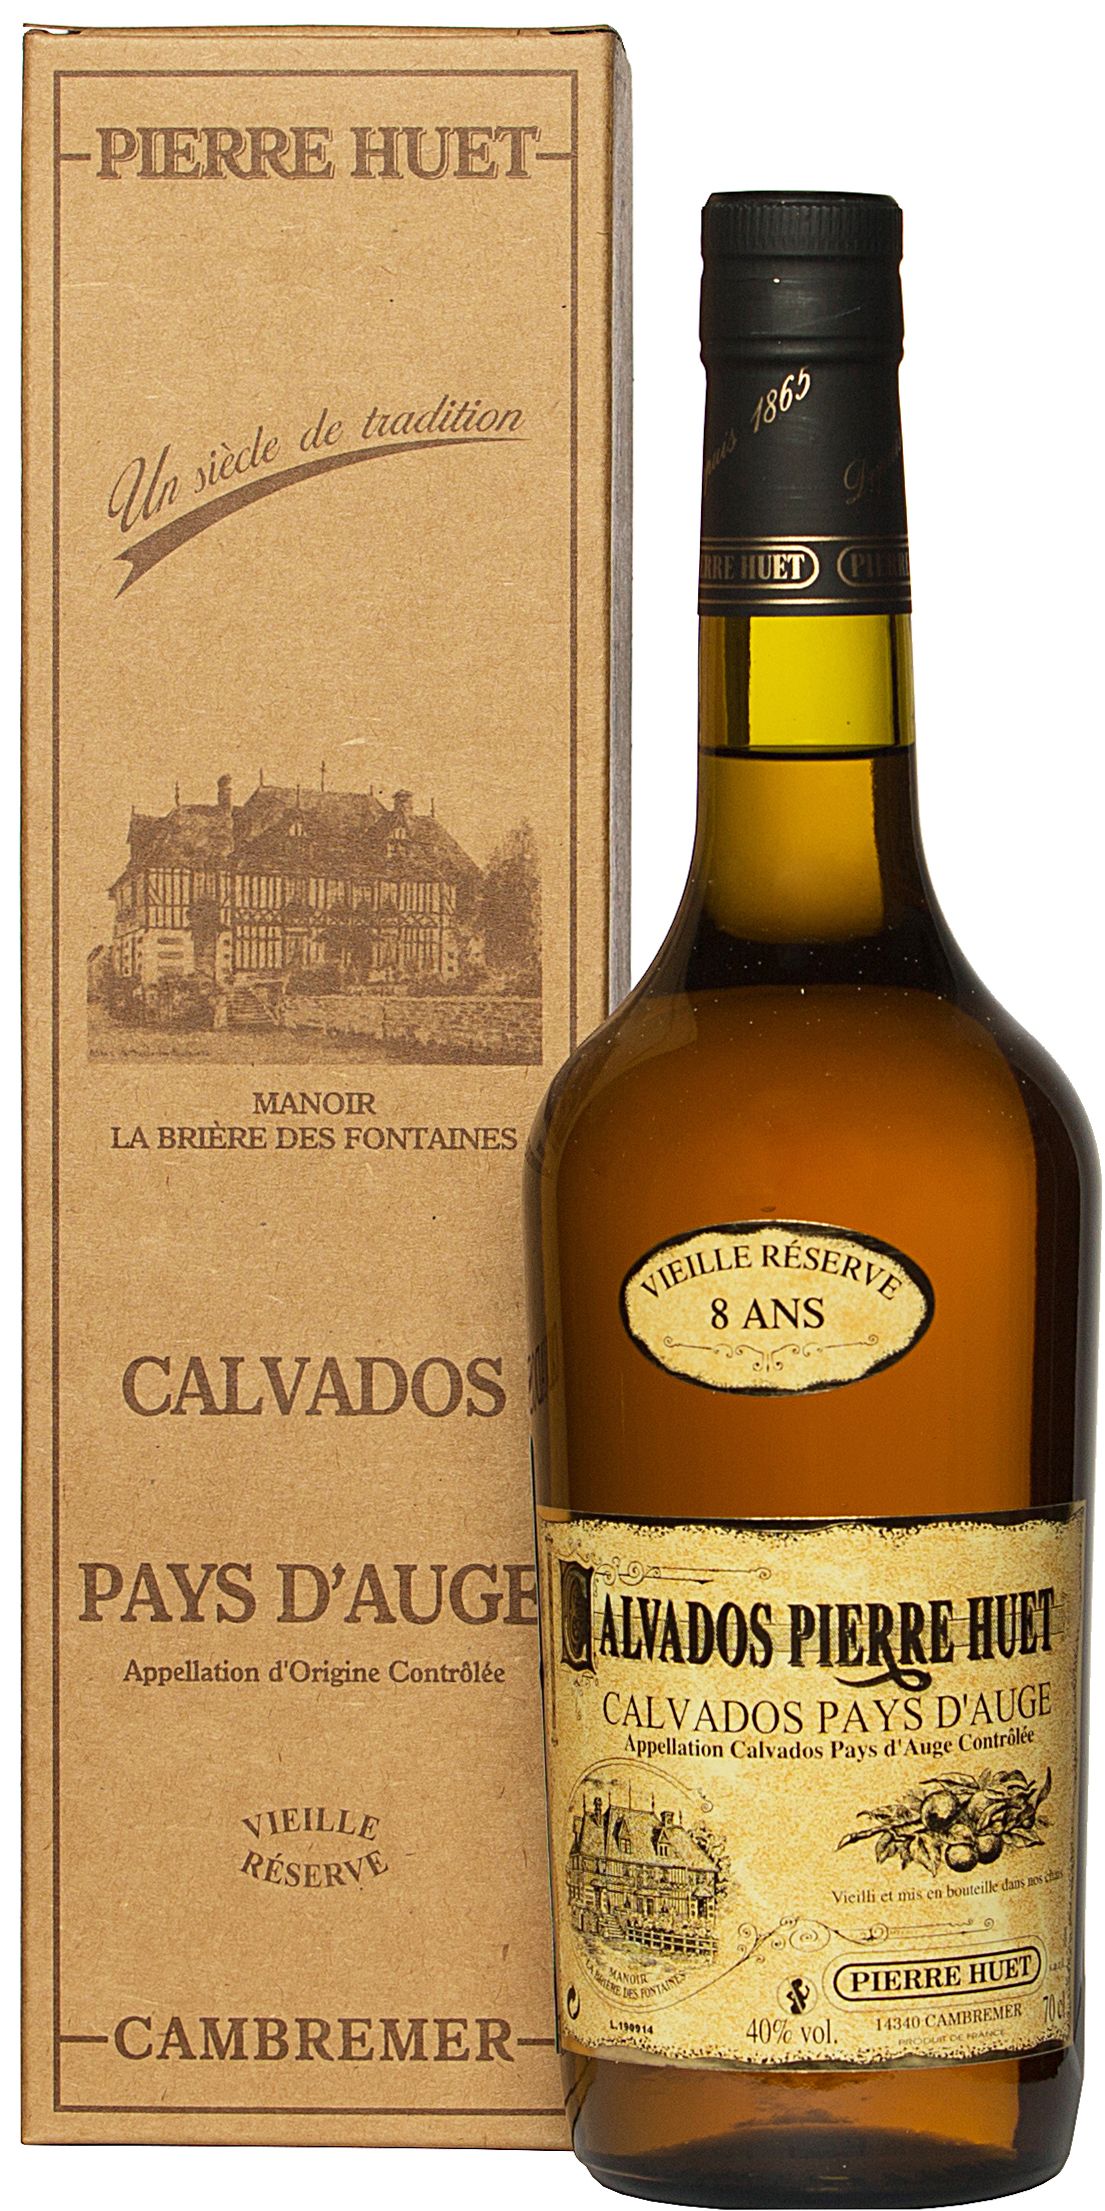 Pierre Huet, Calvados Pays d'Auge Vieille Reserve 8 Ans (Gift Box)